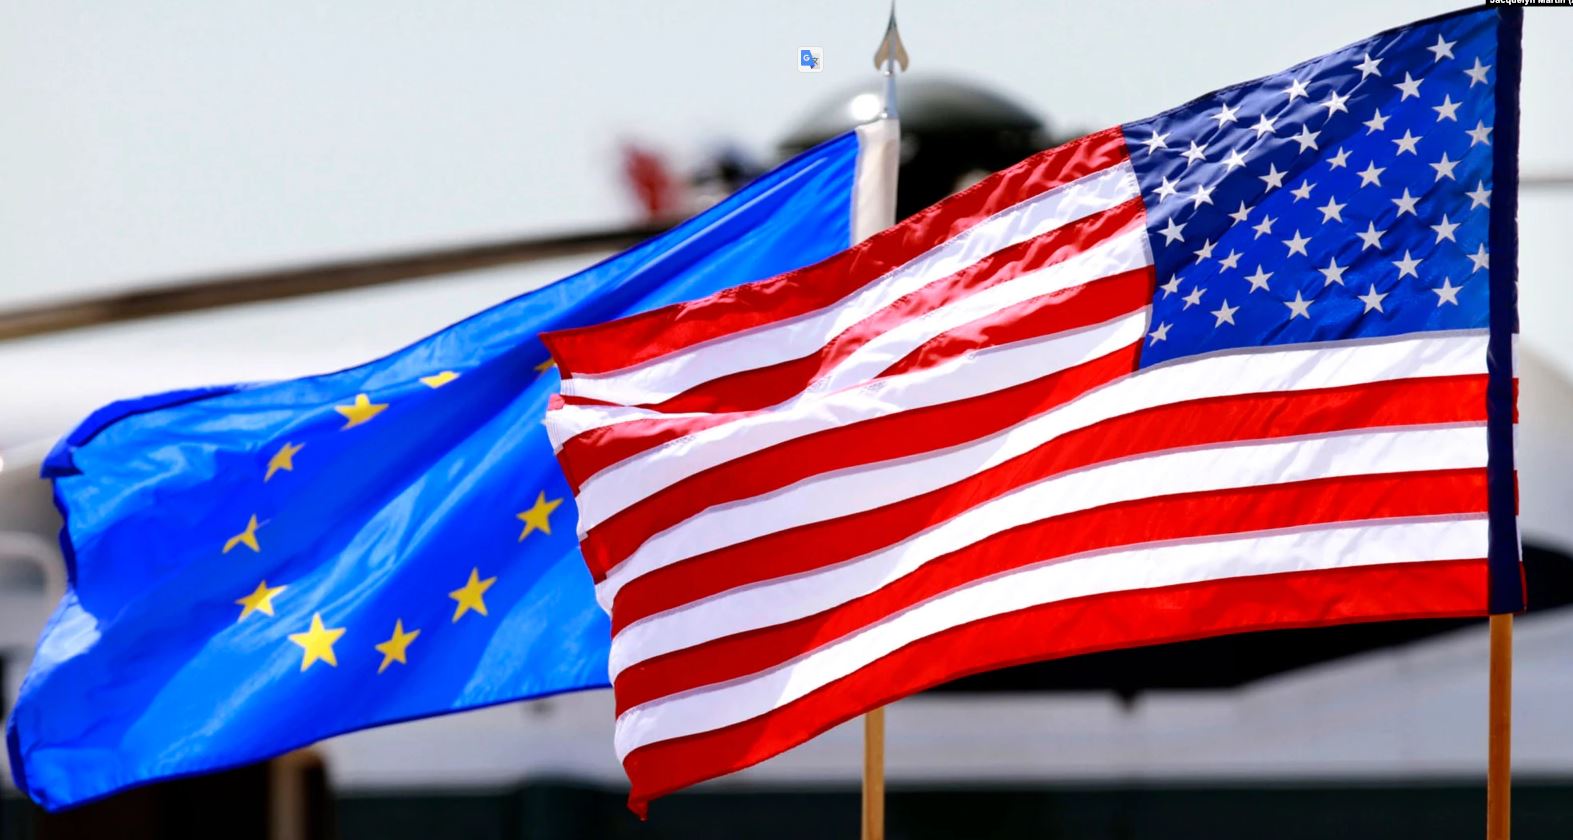 Tensionet e vazhdueshme në veri të Kosovës, reagon SHBA dhe BE